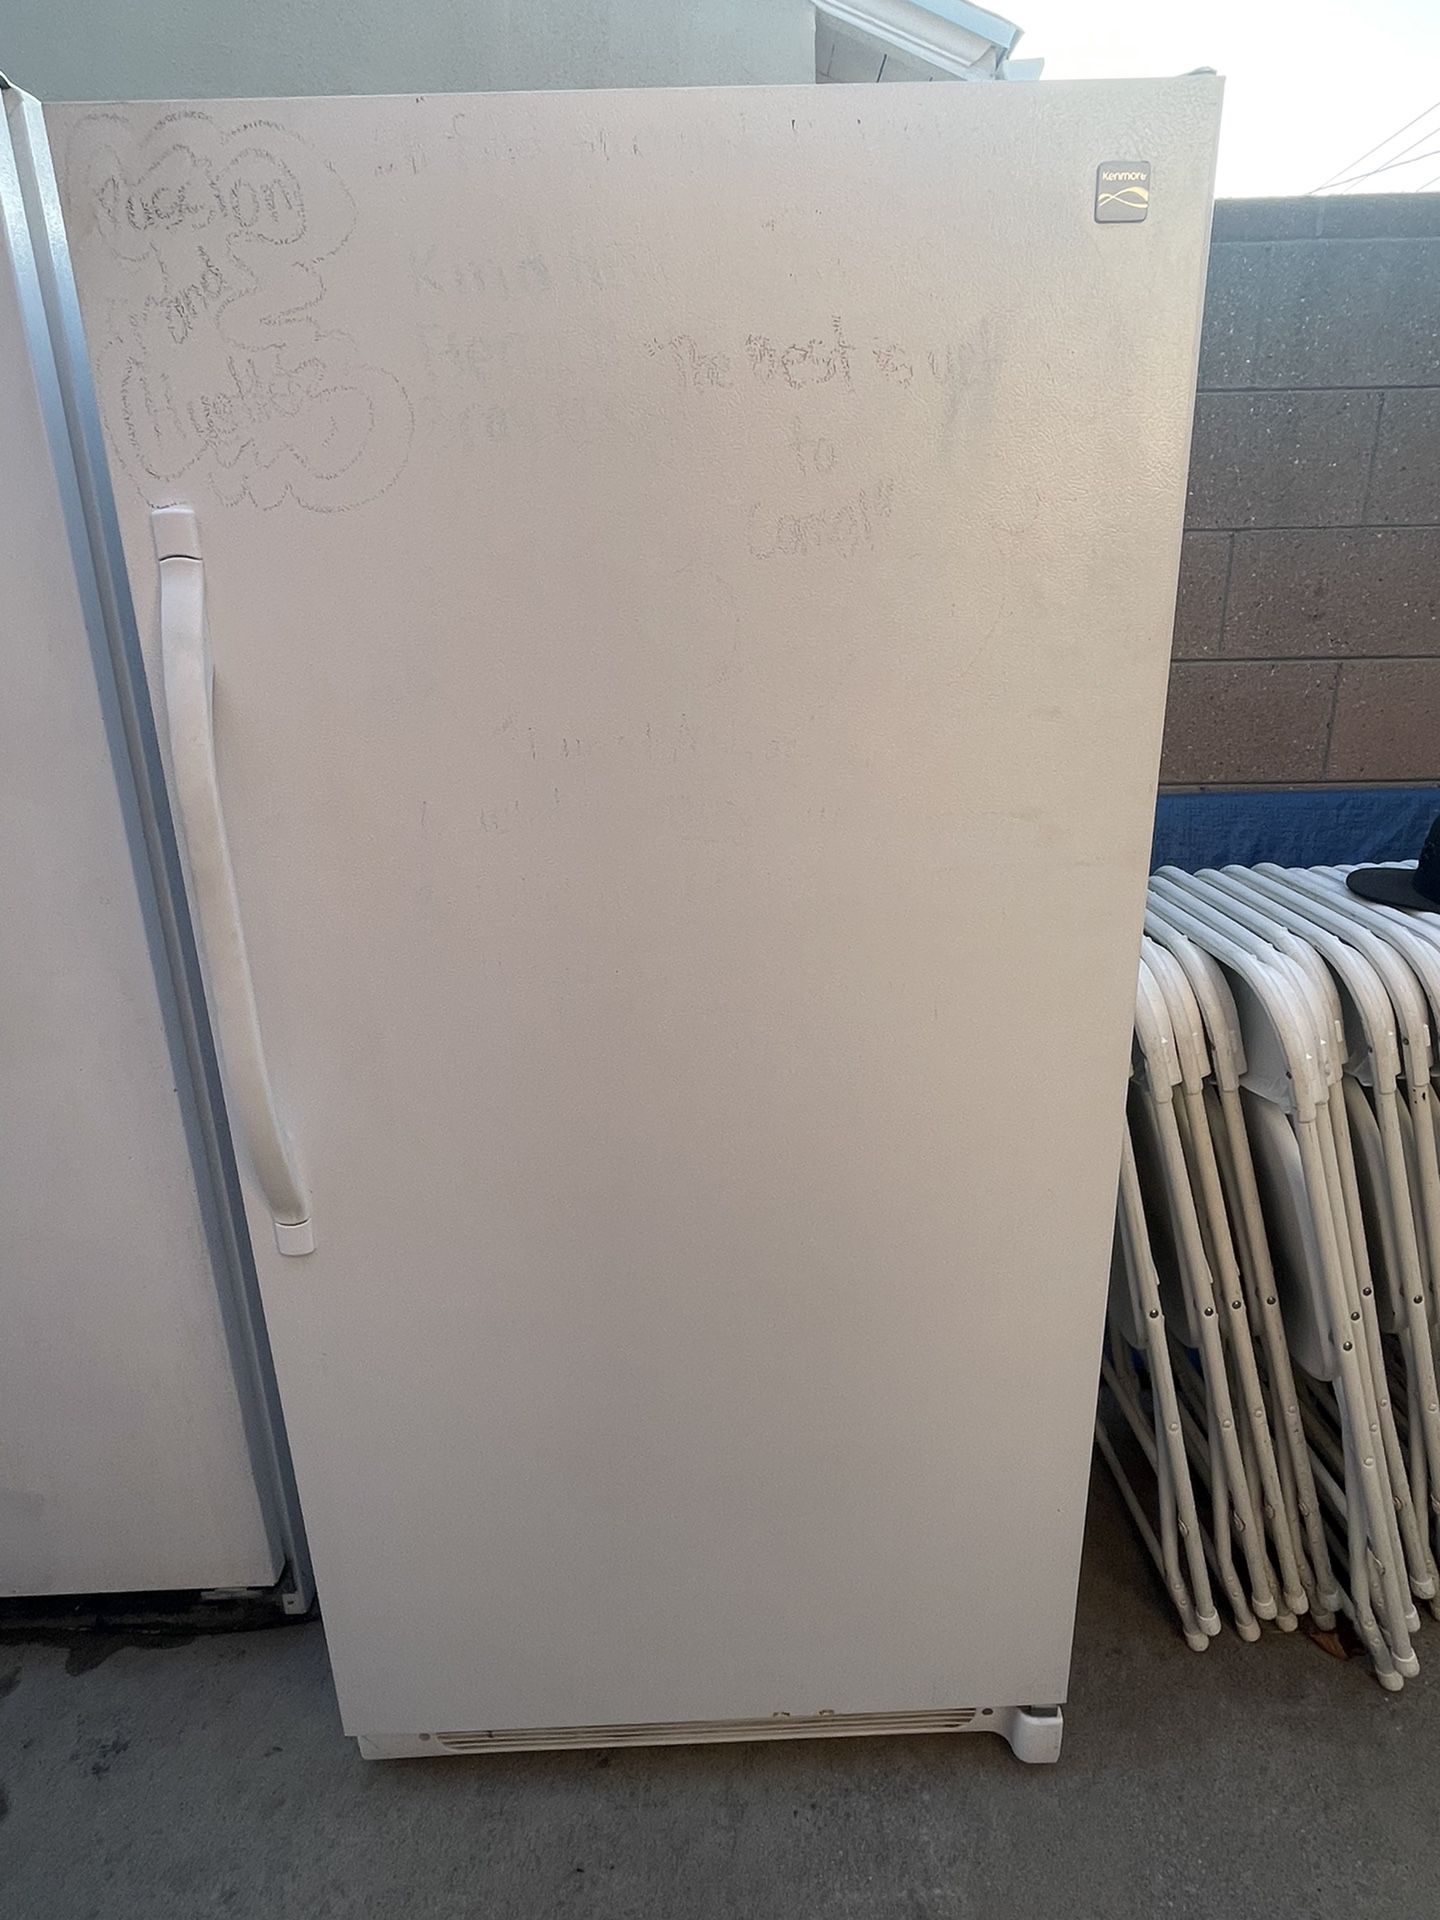 Kenmore Refrigerador/ Refri/ Fridge/ Refrigerador 